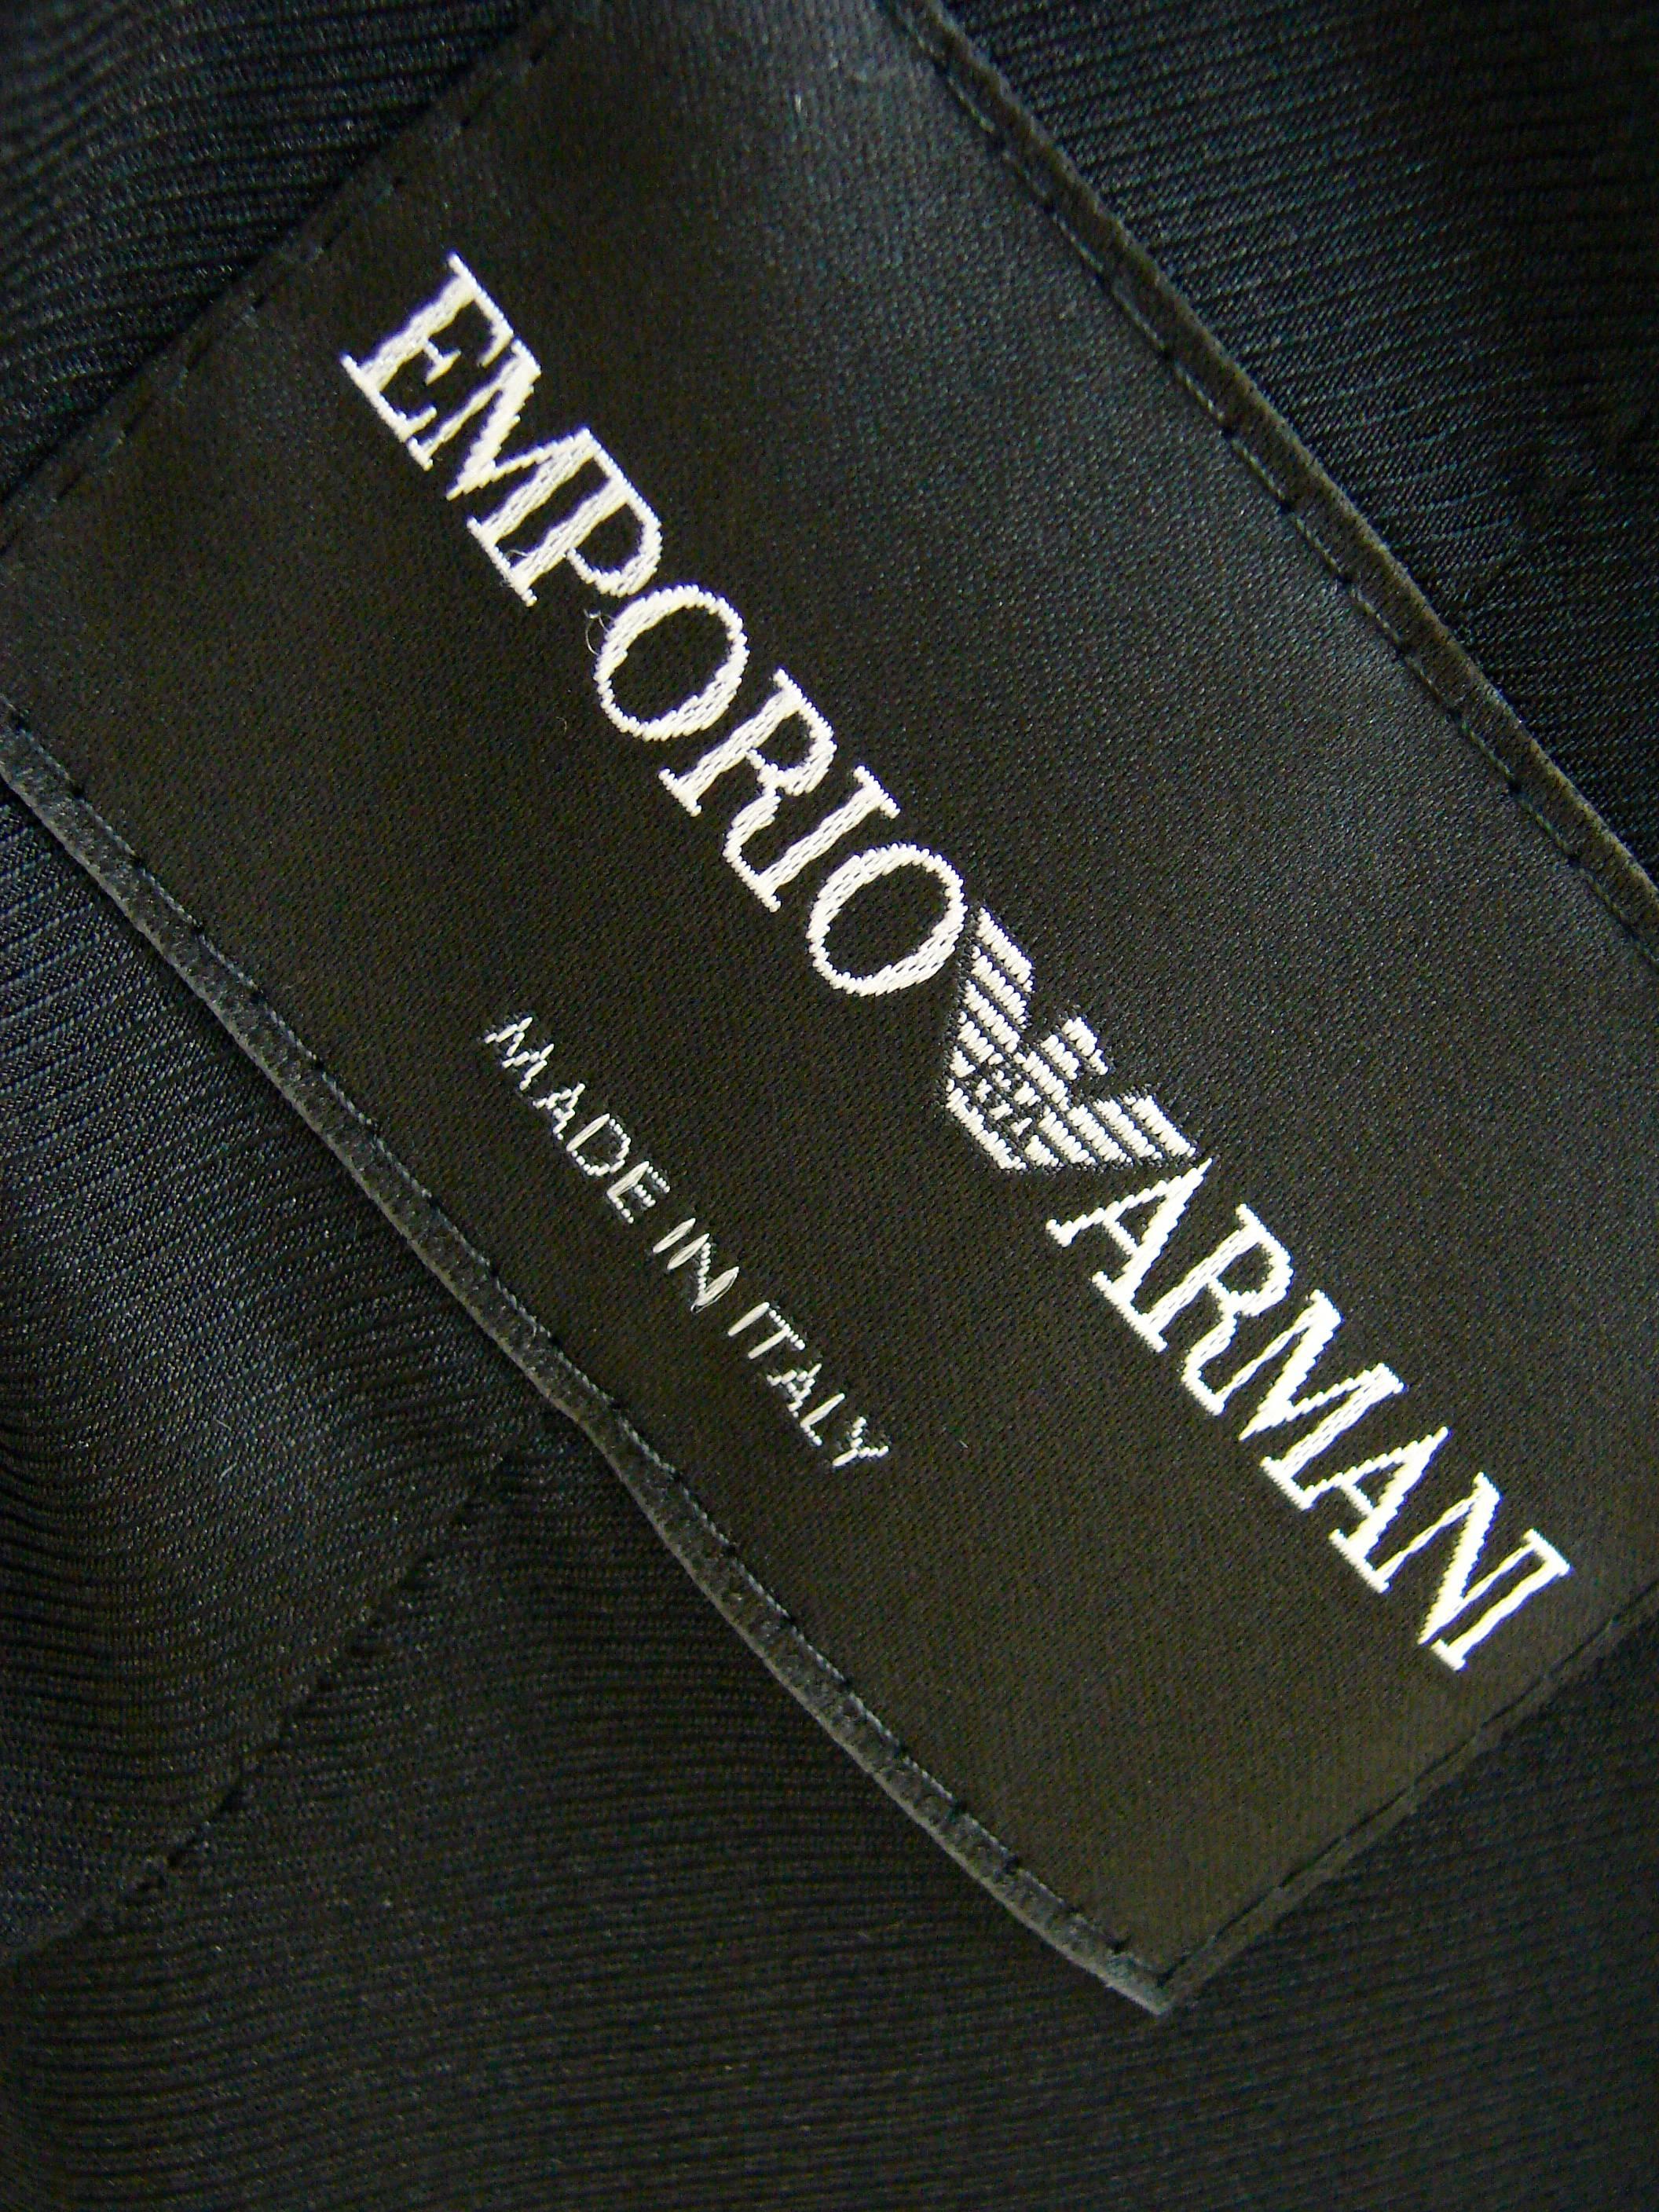 Emporio Armani Black + White Wool Check Jacket Size 48 1990s  3